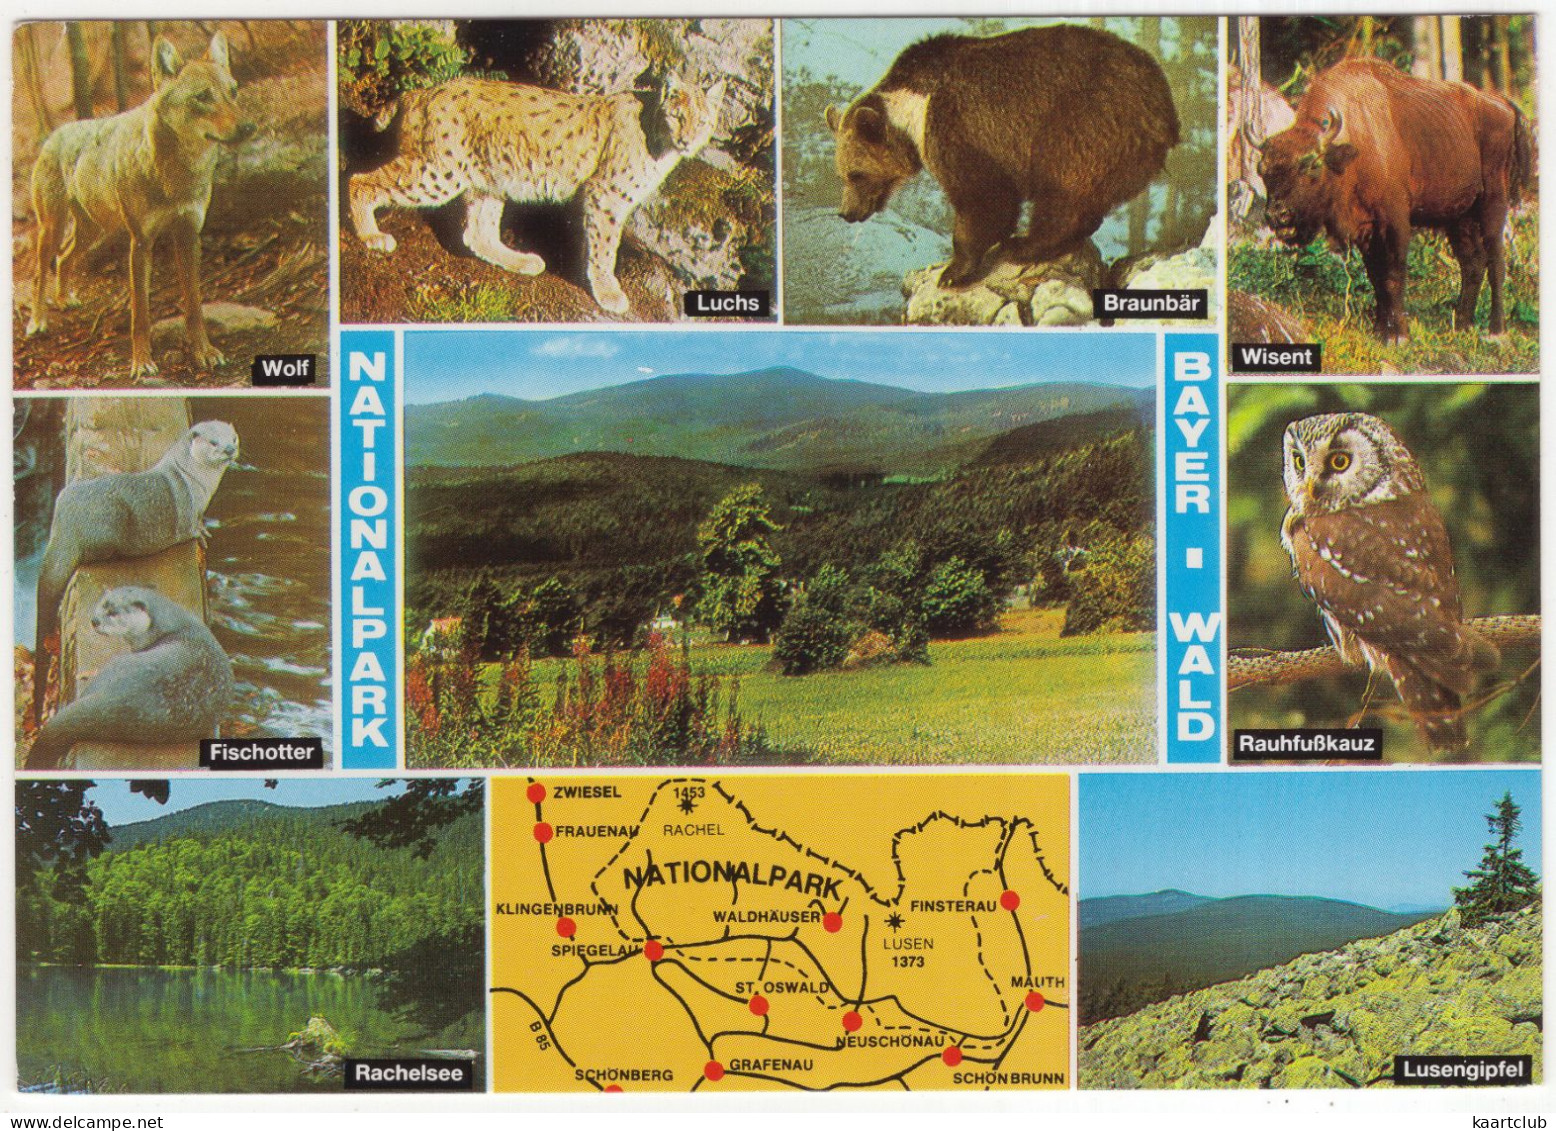 Nationalpark Bayer Wald: Wolf, Luchs, Braunbär, Wisent, Fischotter, Rauhfußkauz - (Deutschland) - Freyung